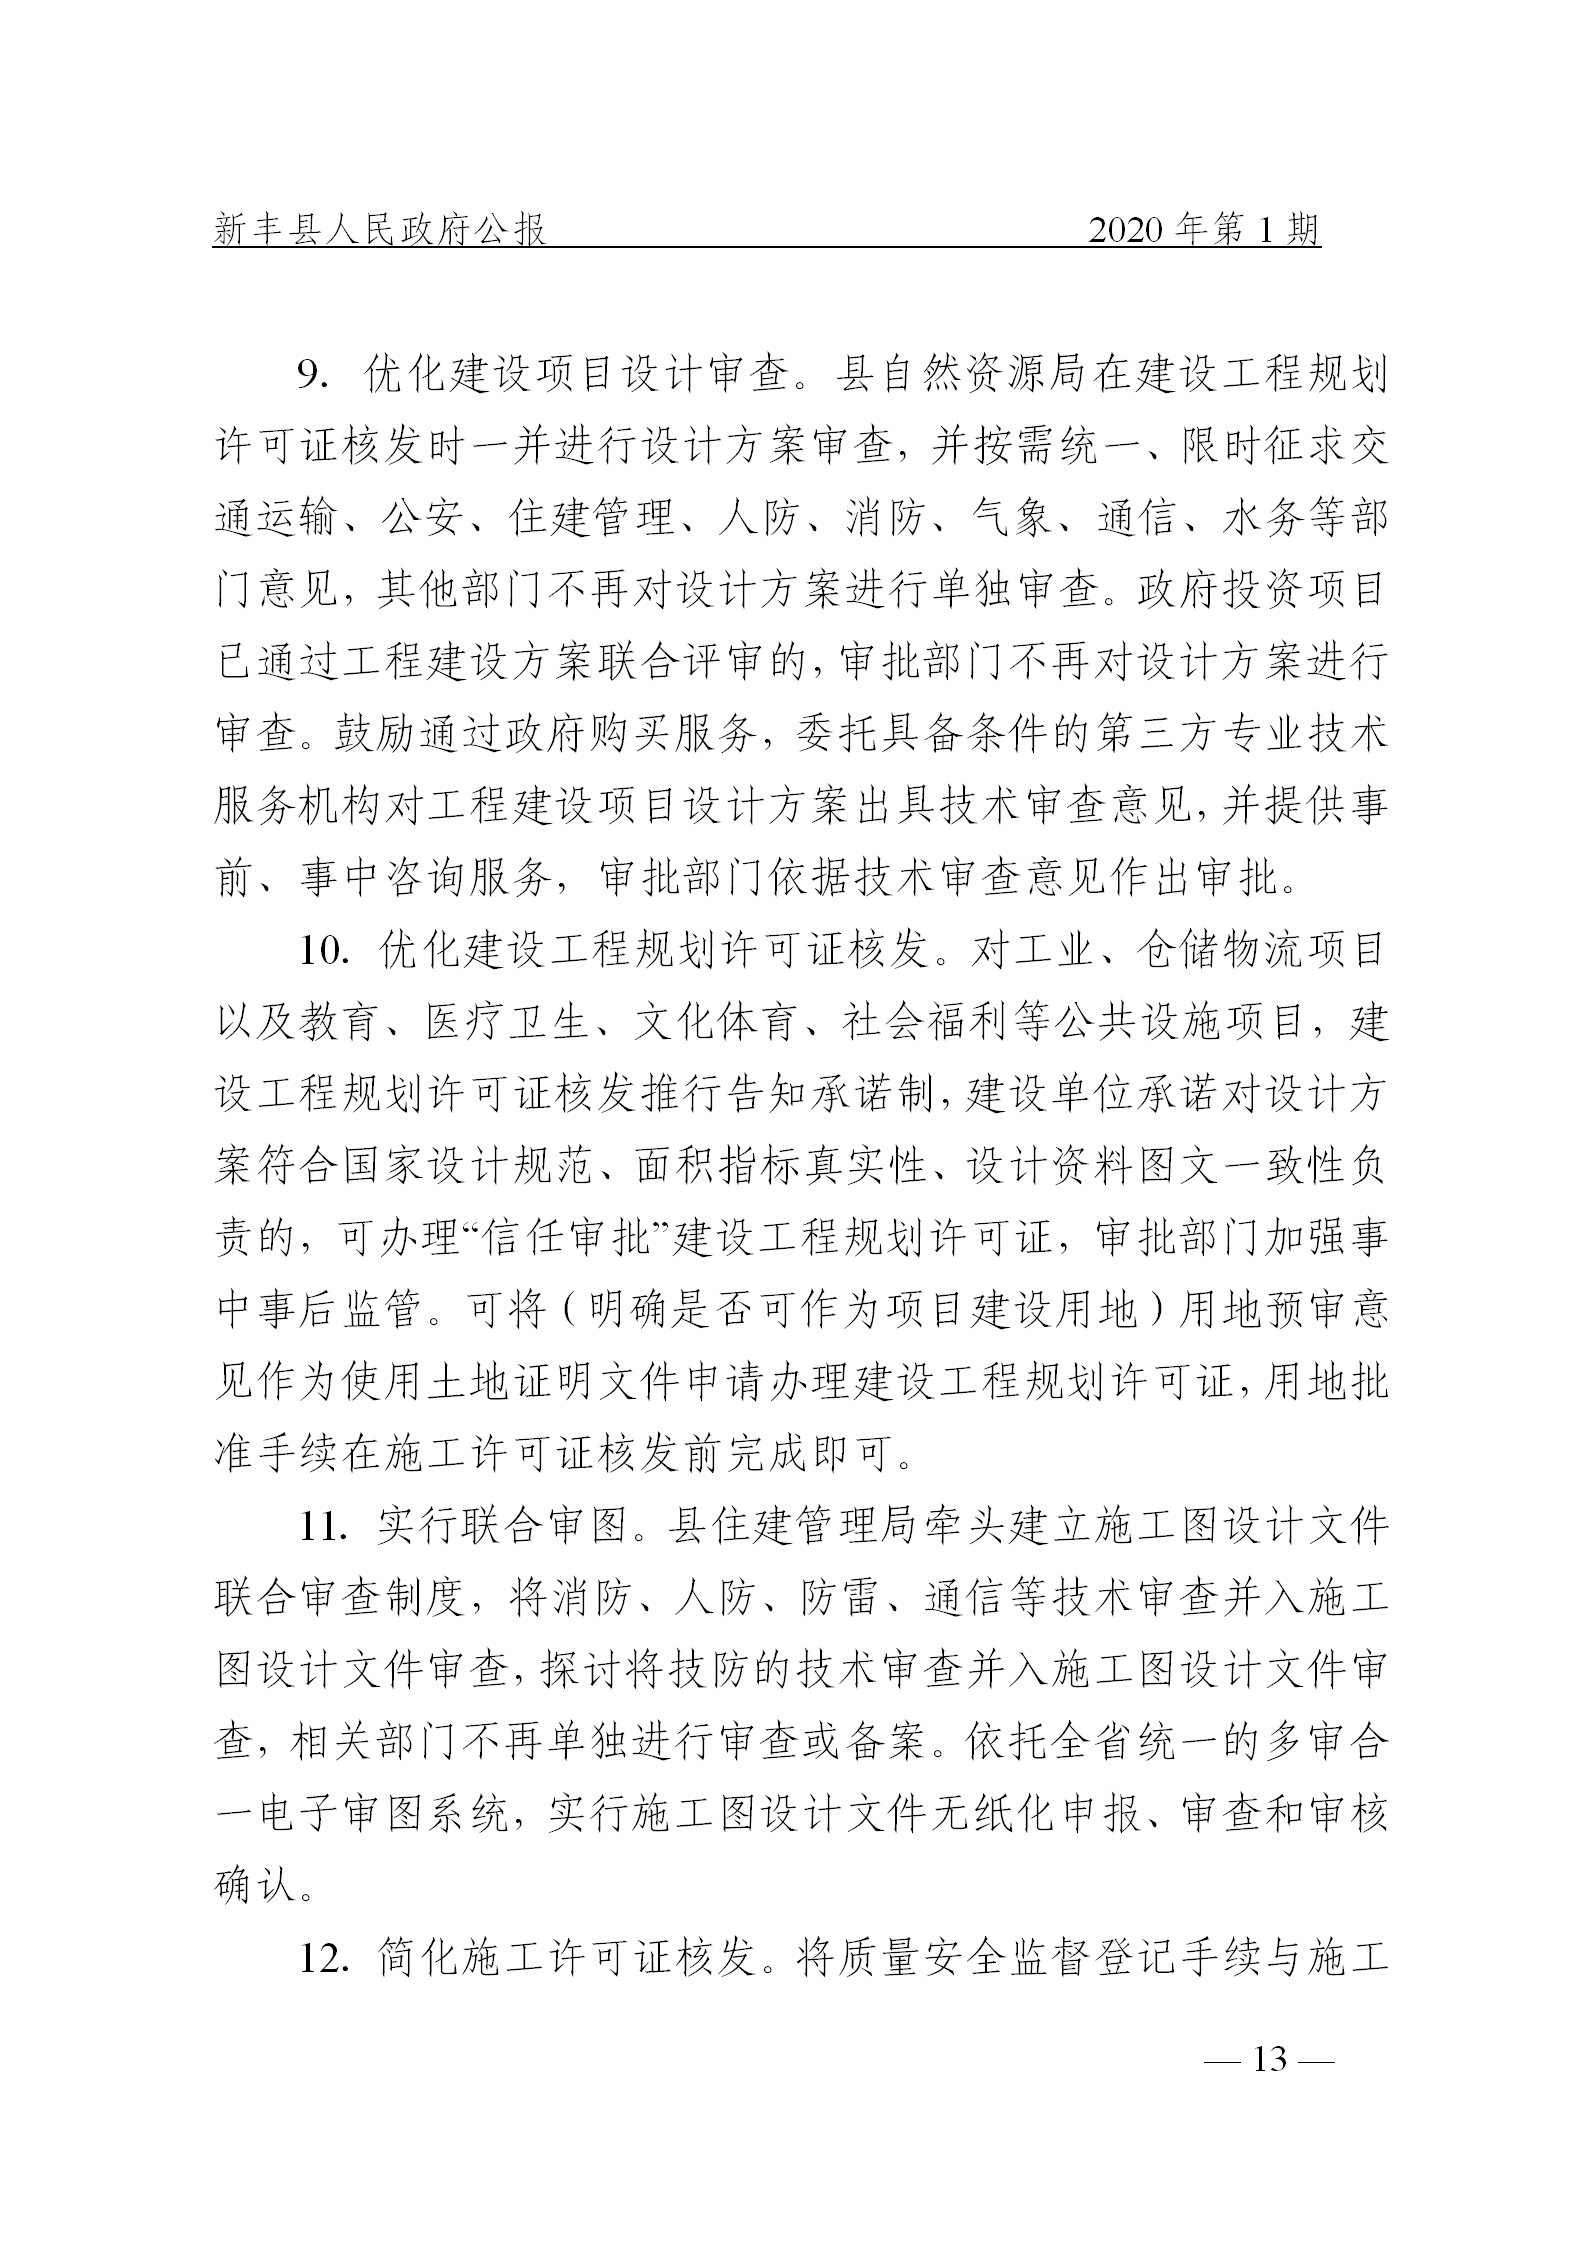 《新丰县人民政府公报》2020年第1期(1)_13.png